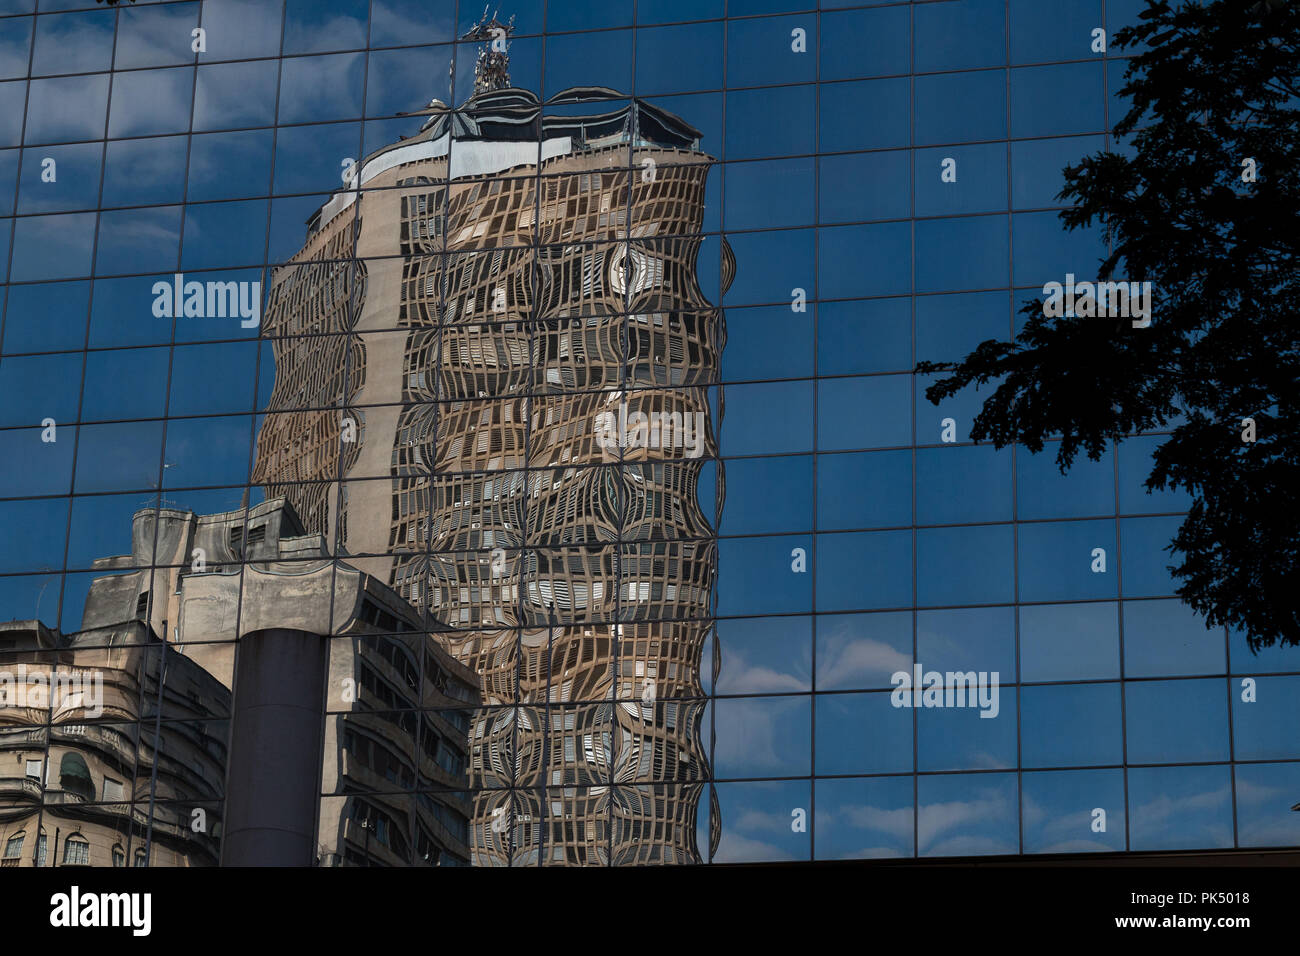 Skycraper reflejado en la fachada de vidrio de otro edificio. Foto de stock